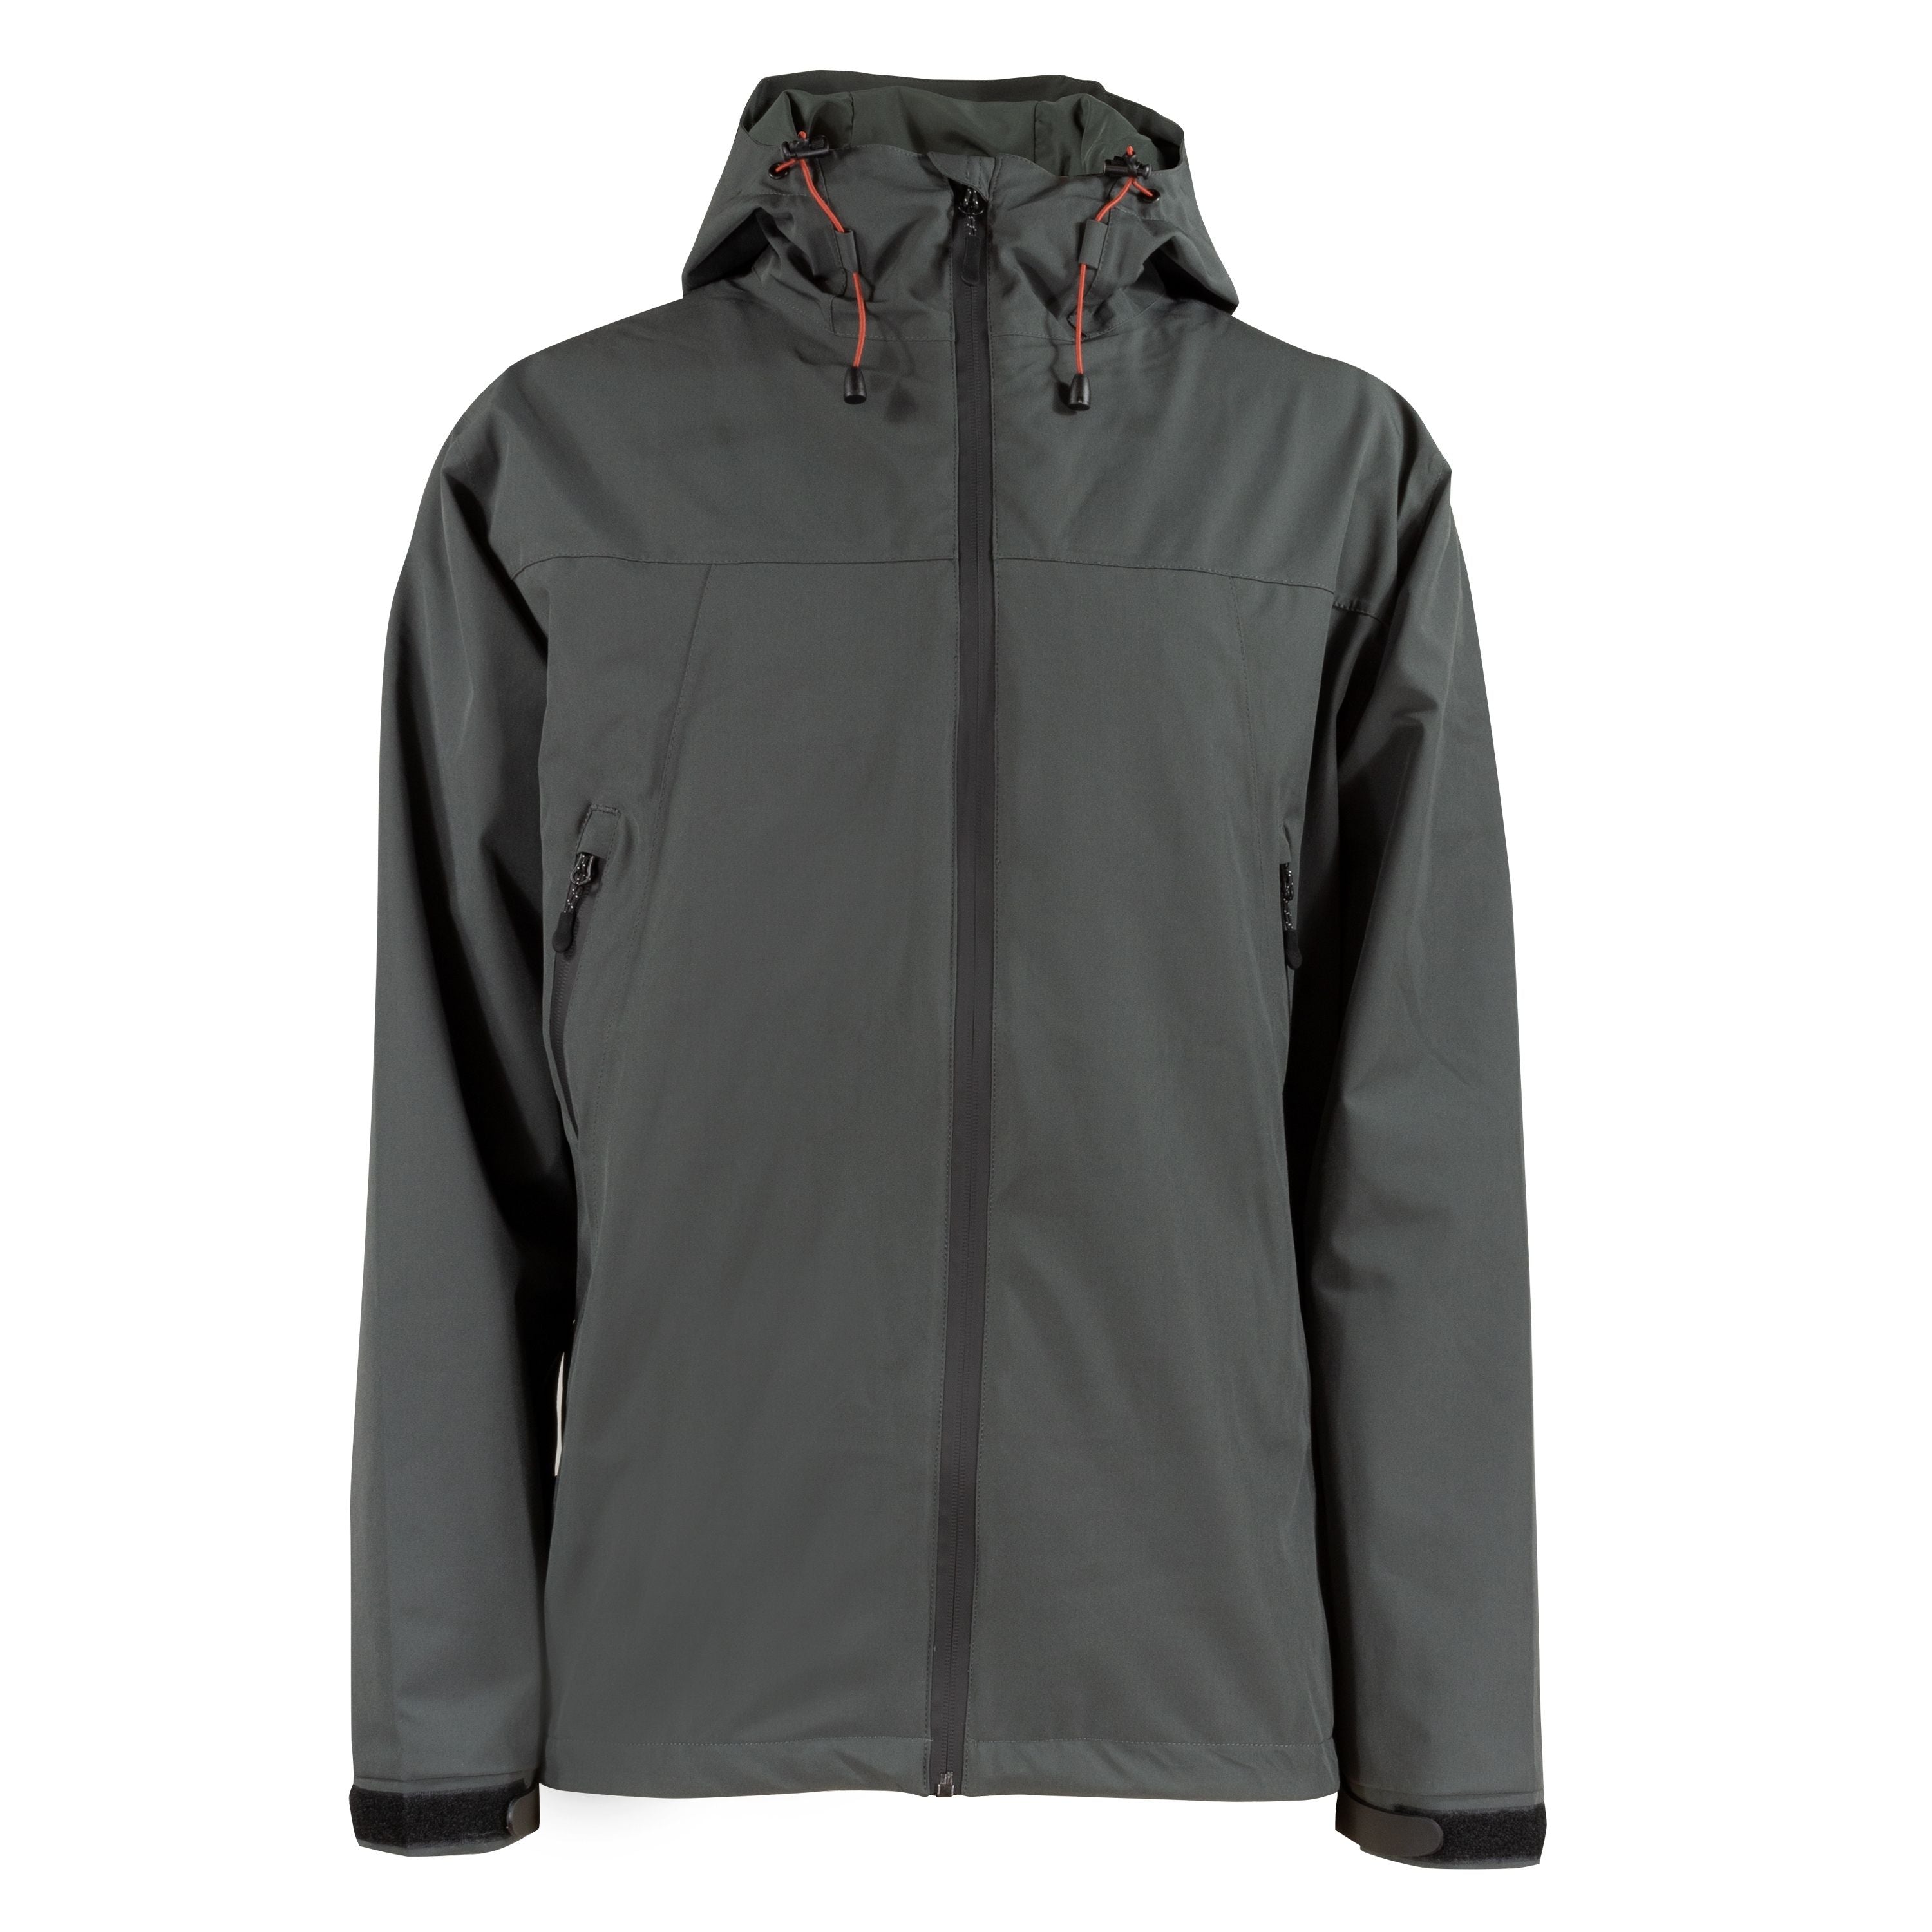 Manteau imperméable extensible - Homme||Stretchable rain jacket - Men's